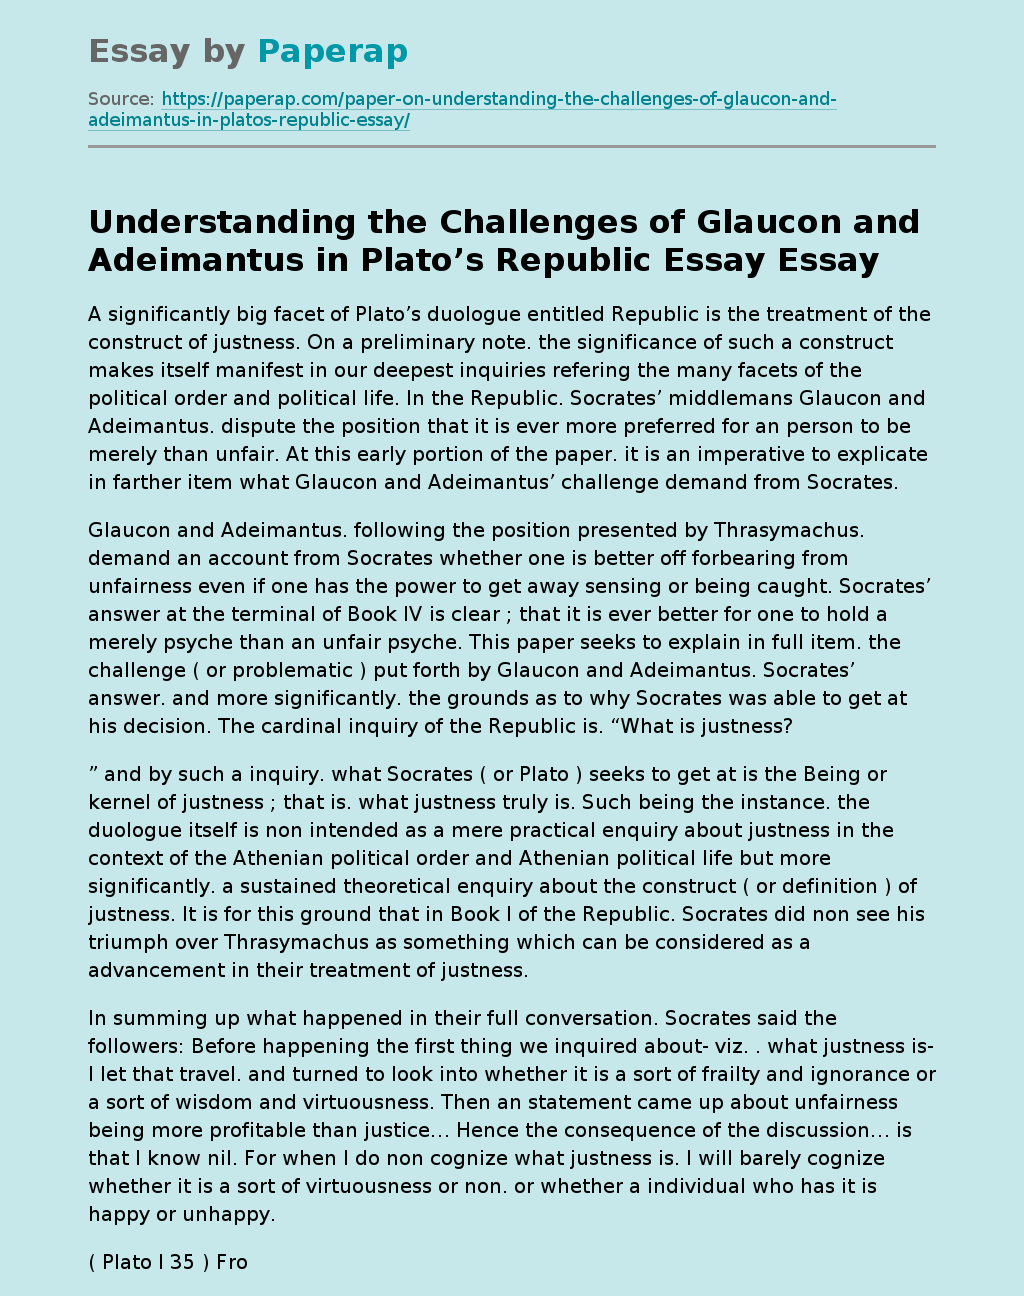 Understanding the Challenges of Glaucon and Adeimantus in Plato’s Republic Essay